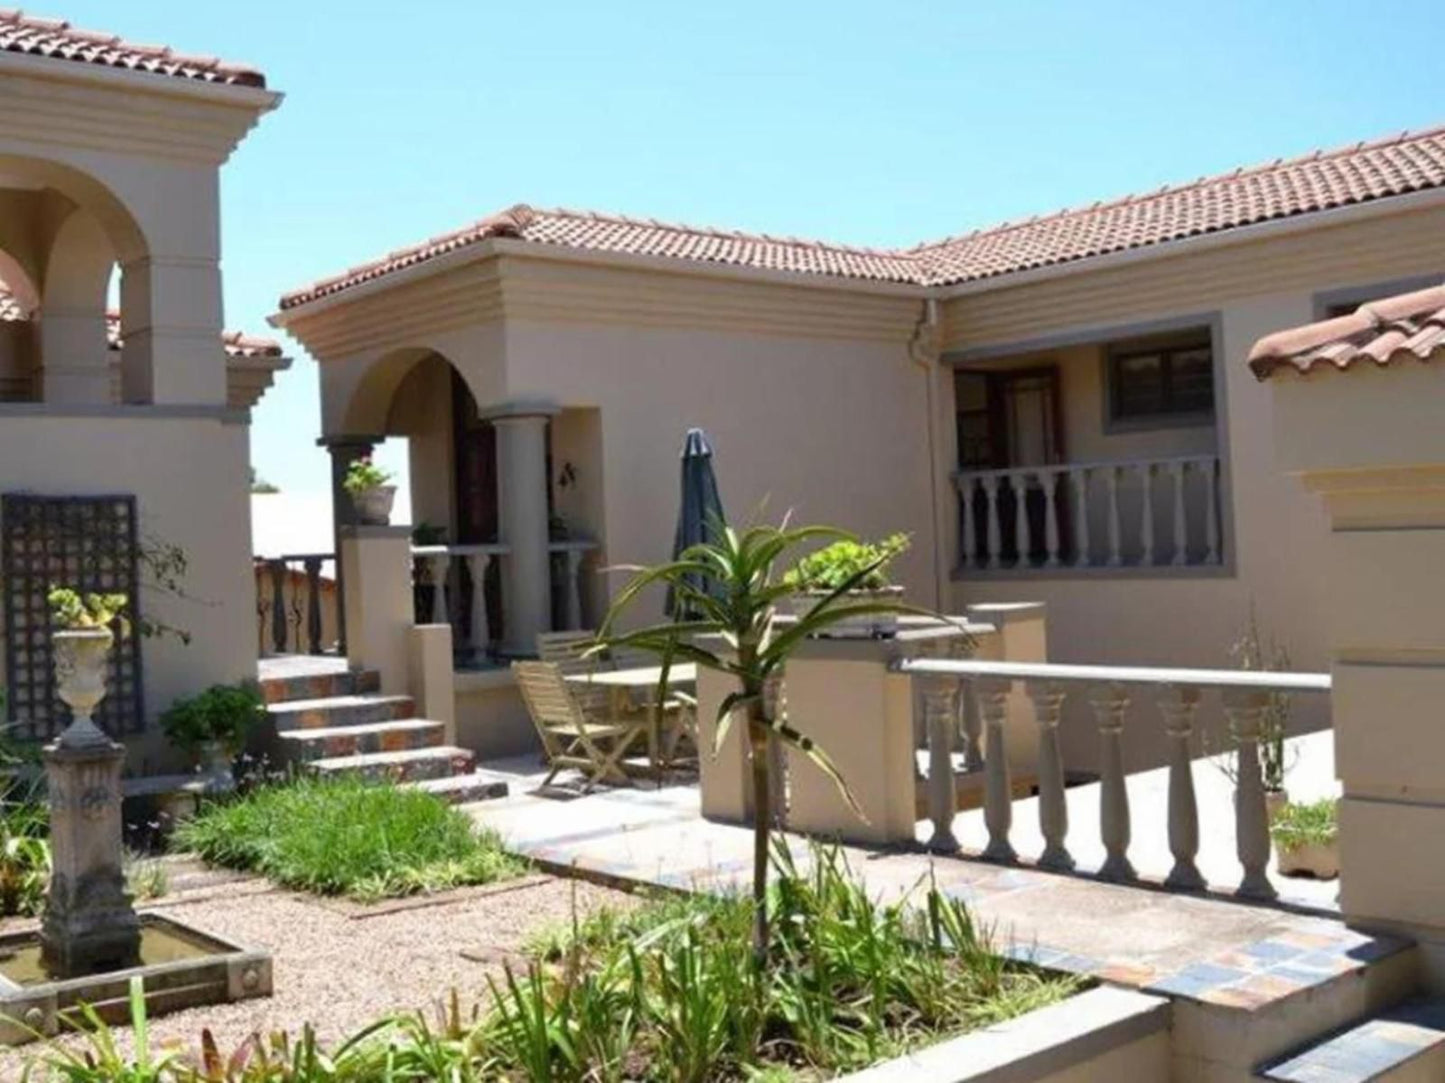 The Villa Umhlanga Umhlanga Durban Kwazulu Natal South Africa House, Building, Architecture, Palm Tree, Plant, Nature, Wood